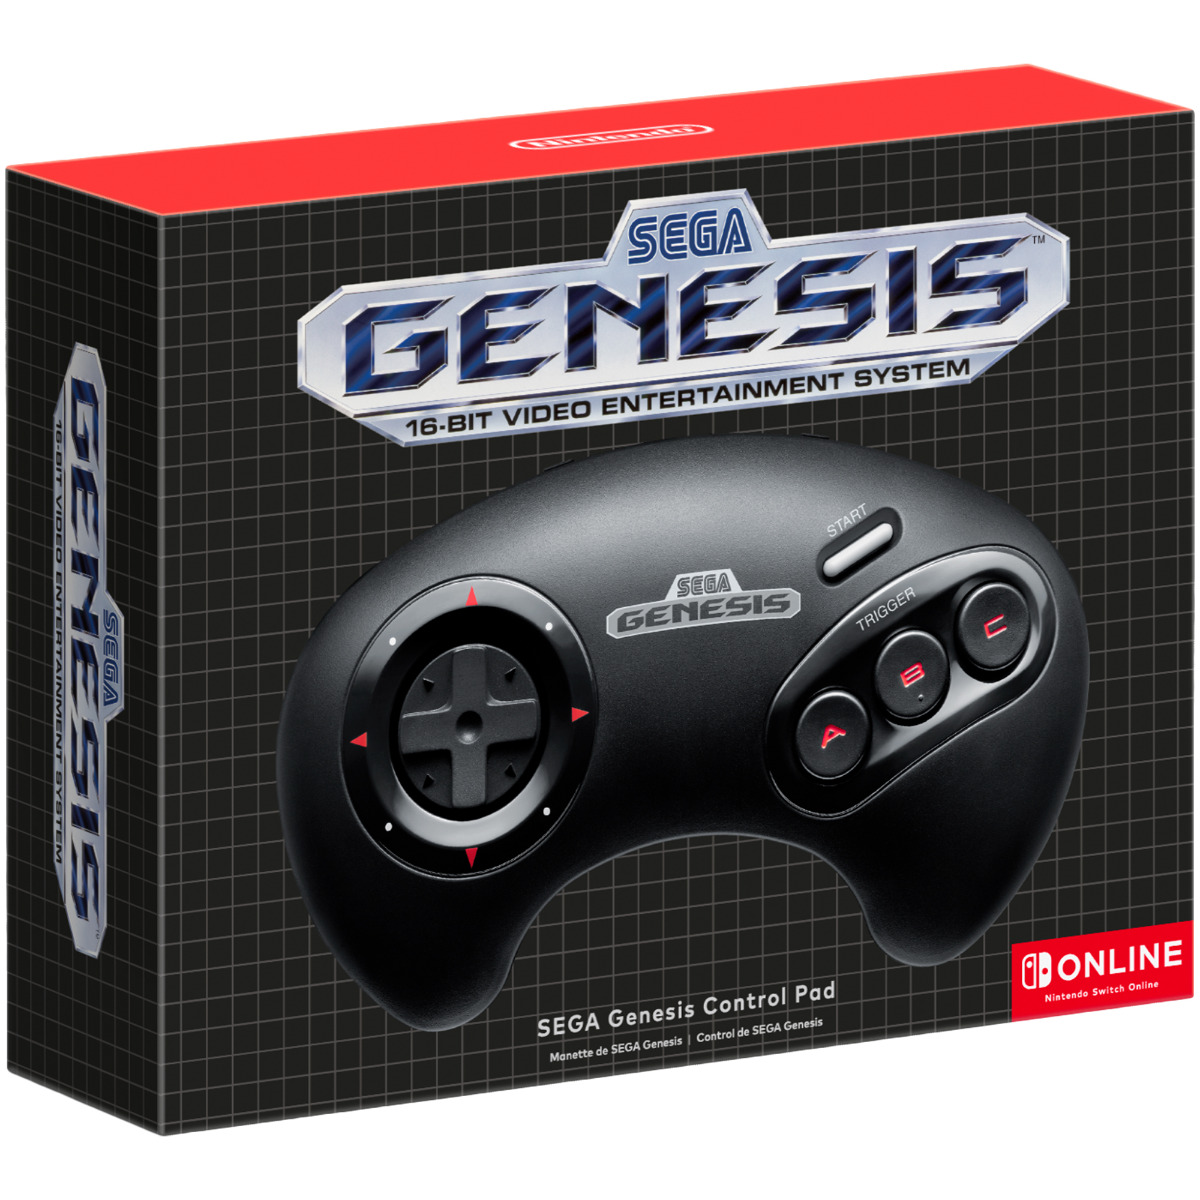 Wireless N64 & Genesis Controller ($50) (Back in stock)